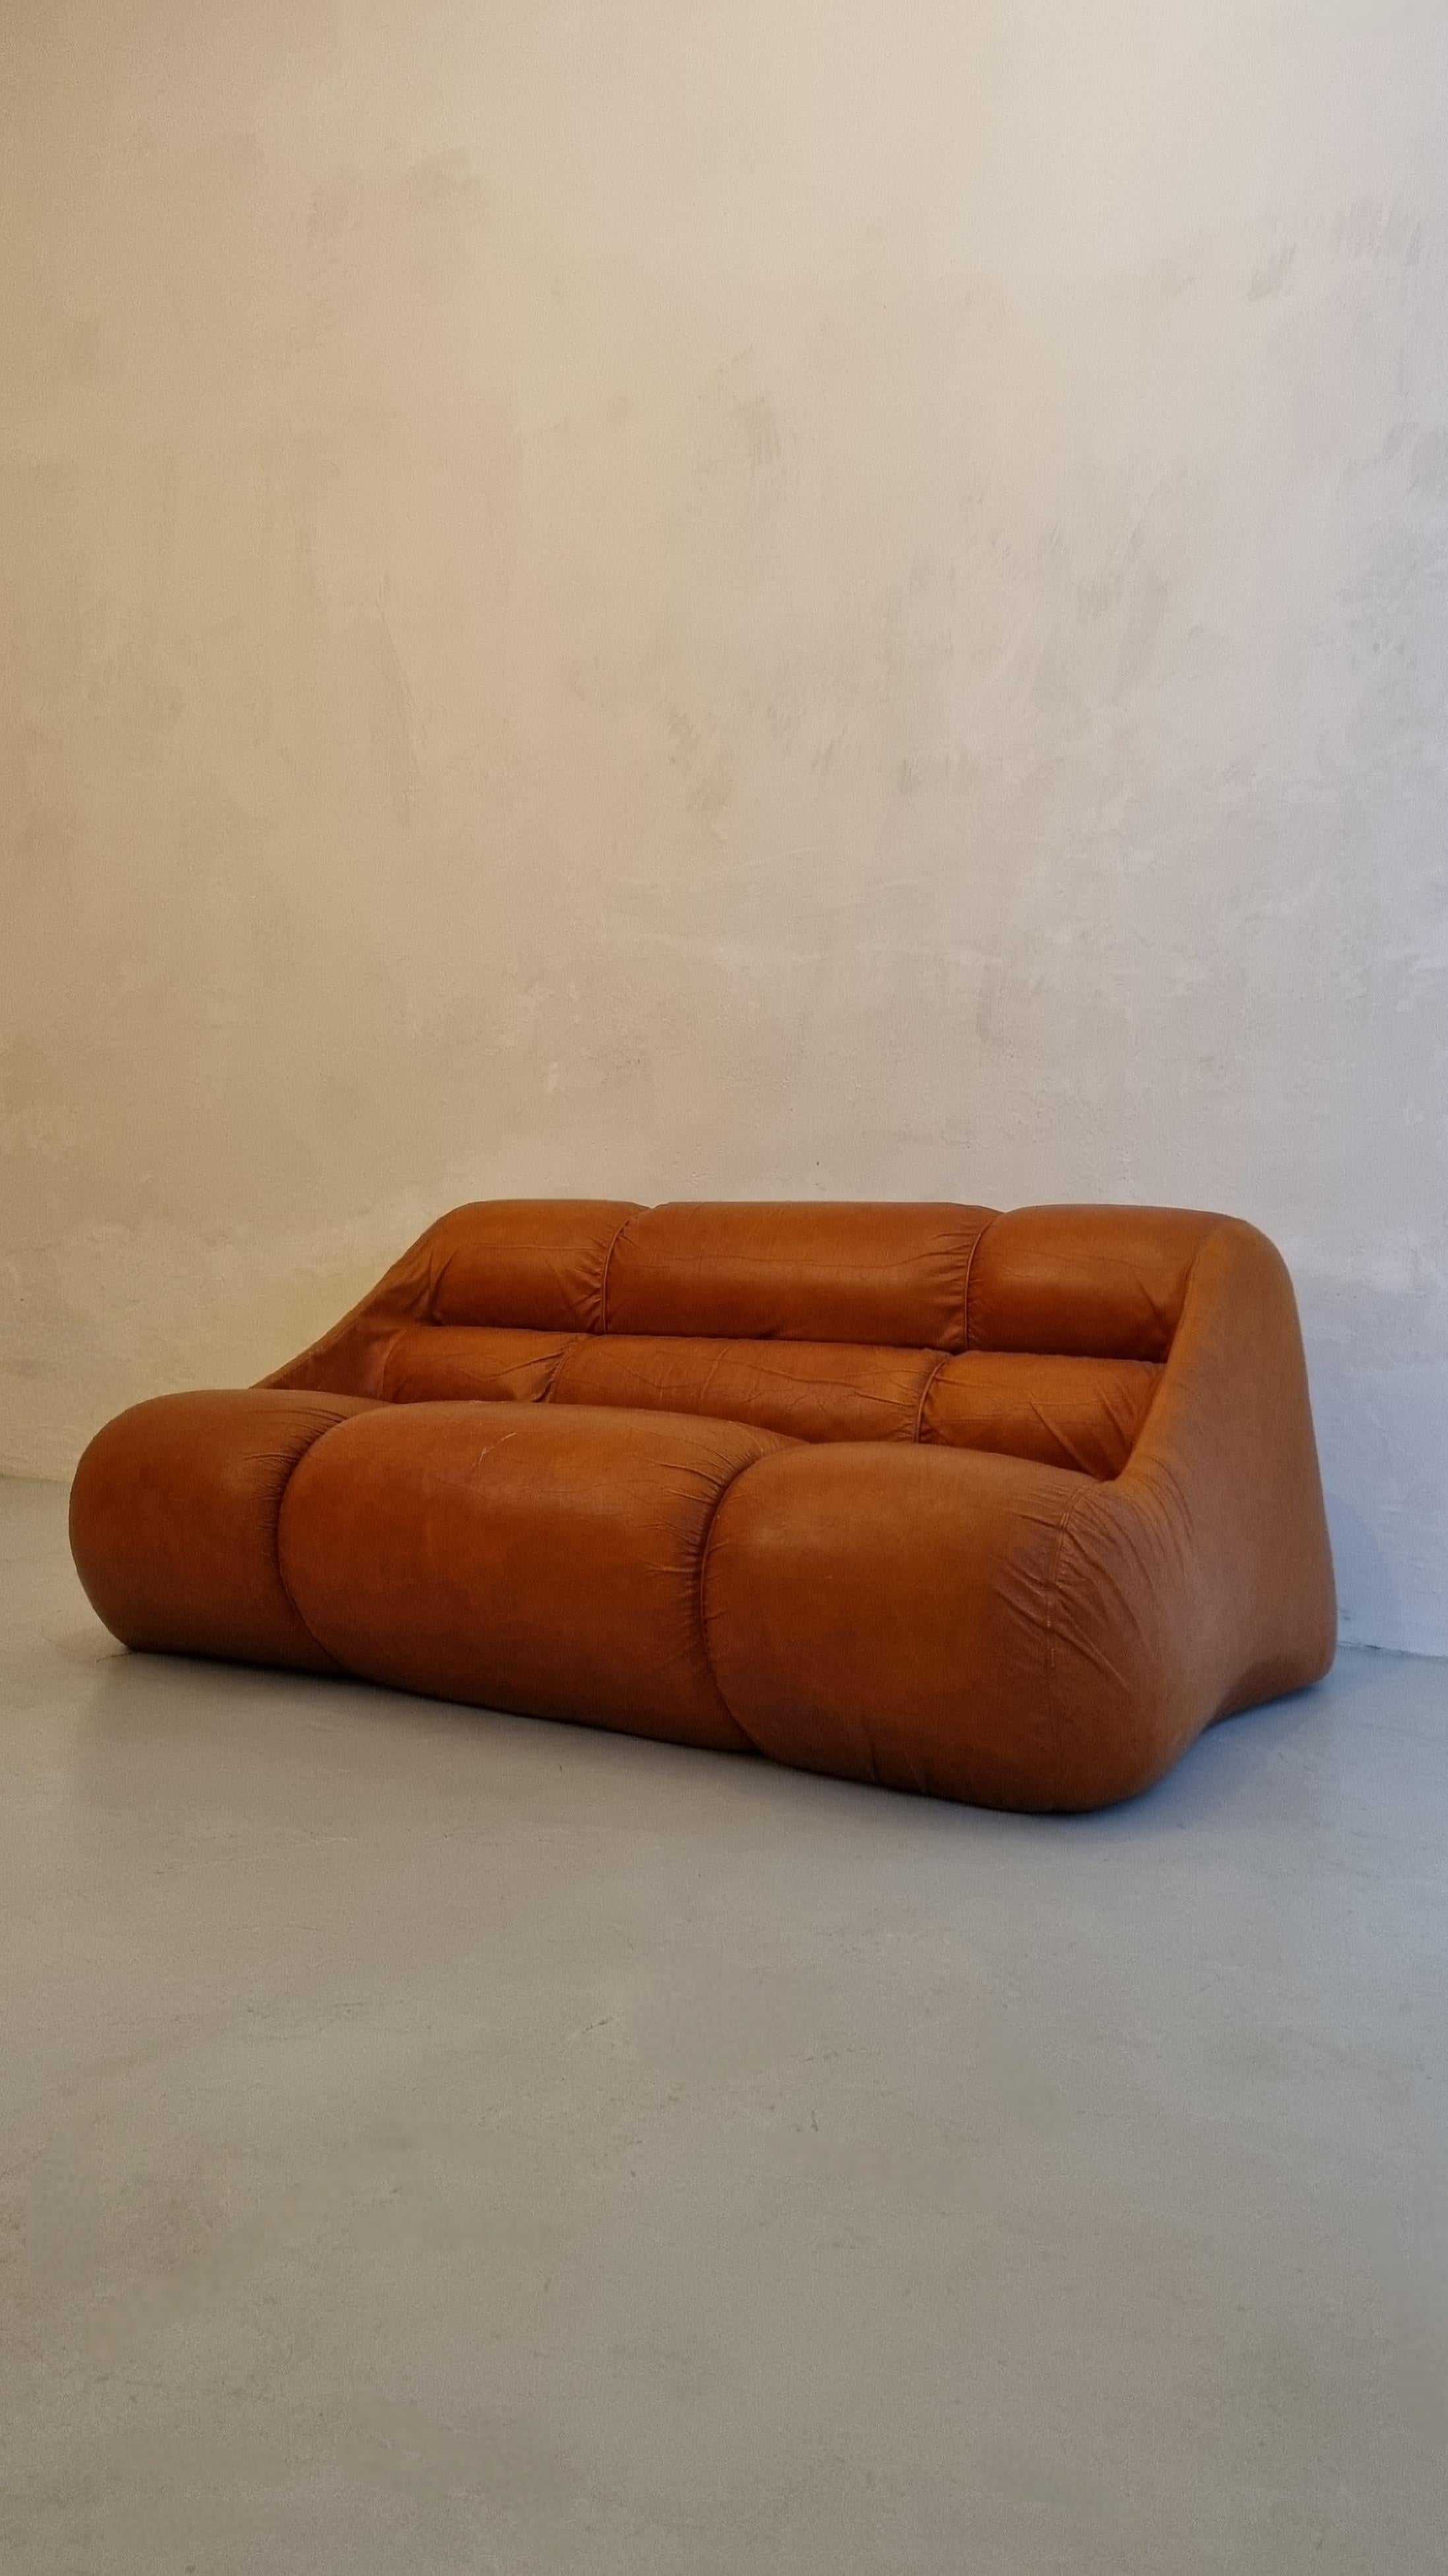 Canapé 2 places Ciuingam conçu par le trio de designers De Pas D' Urbino & Lomazzi pour BBB Bonacina en 1967.
Rembourrage en mousse de caoutchouc, cuir d'origine, plastique.
Bon état, la peau est légèrement usée au niveau de l'assise.
Jonathan De